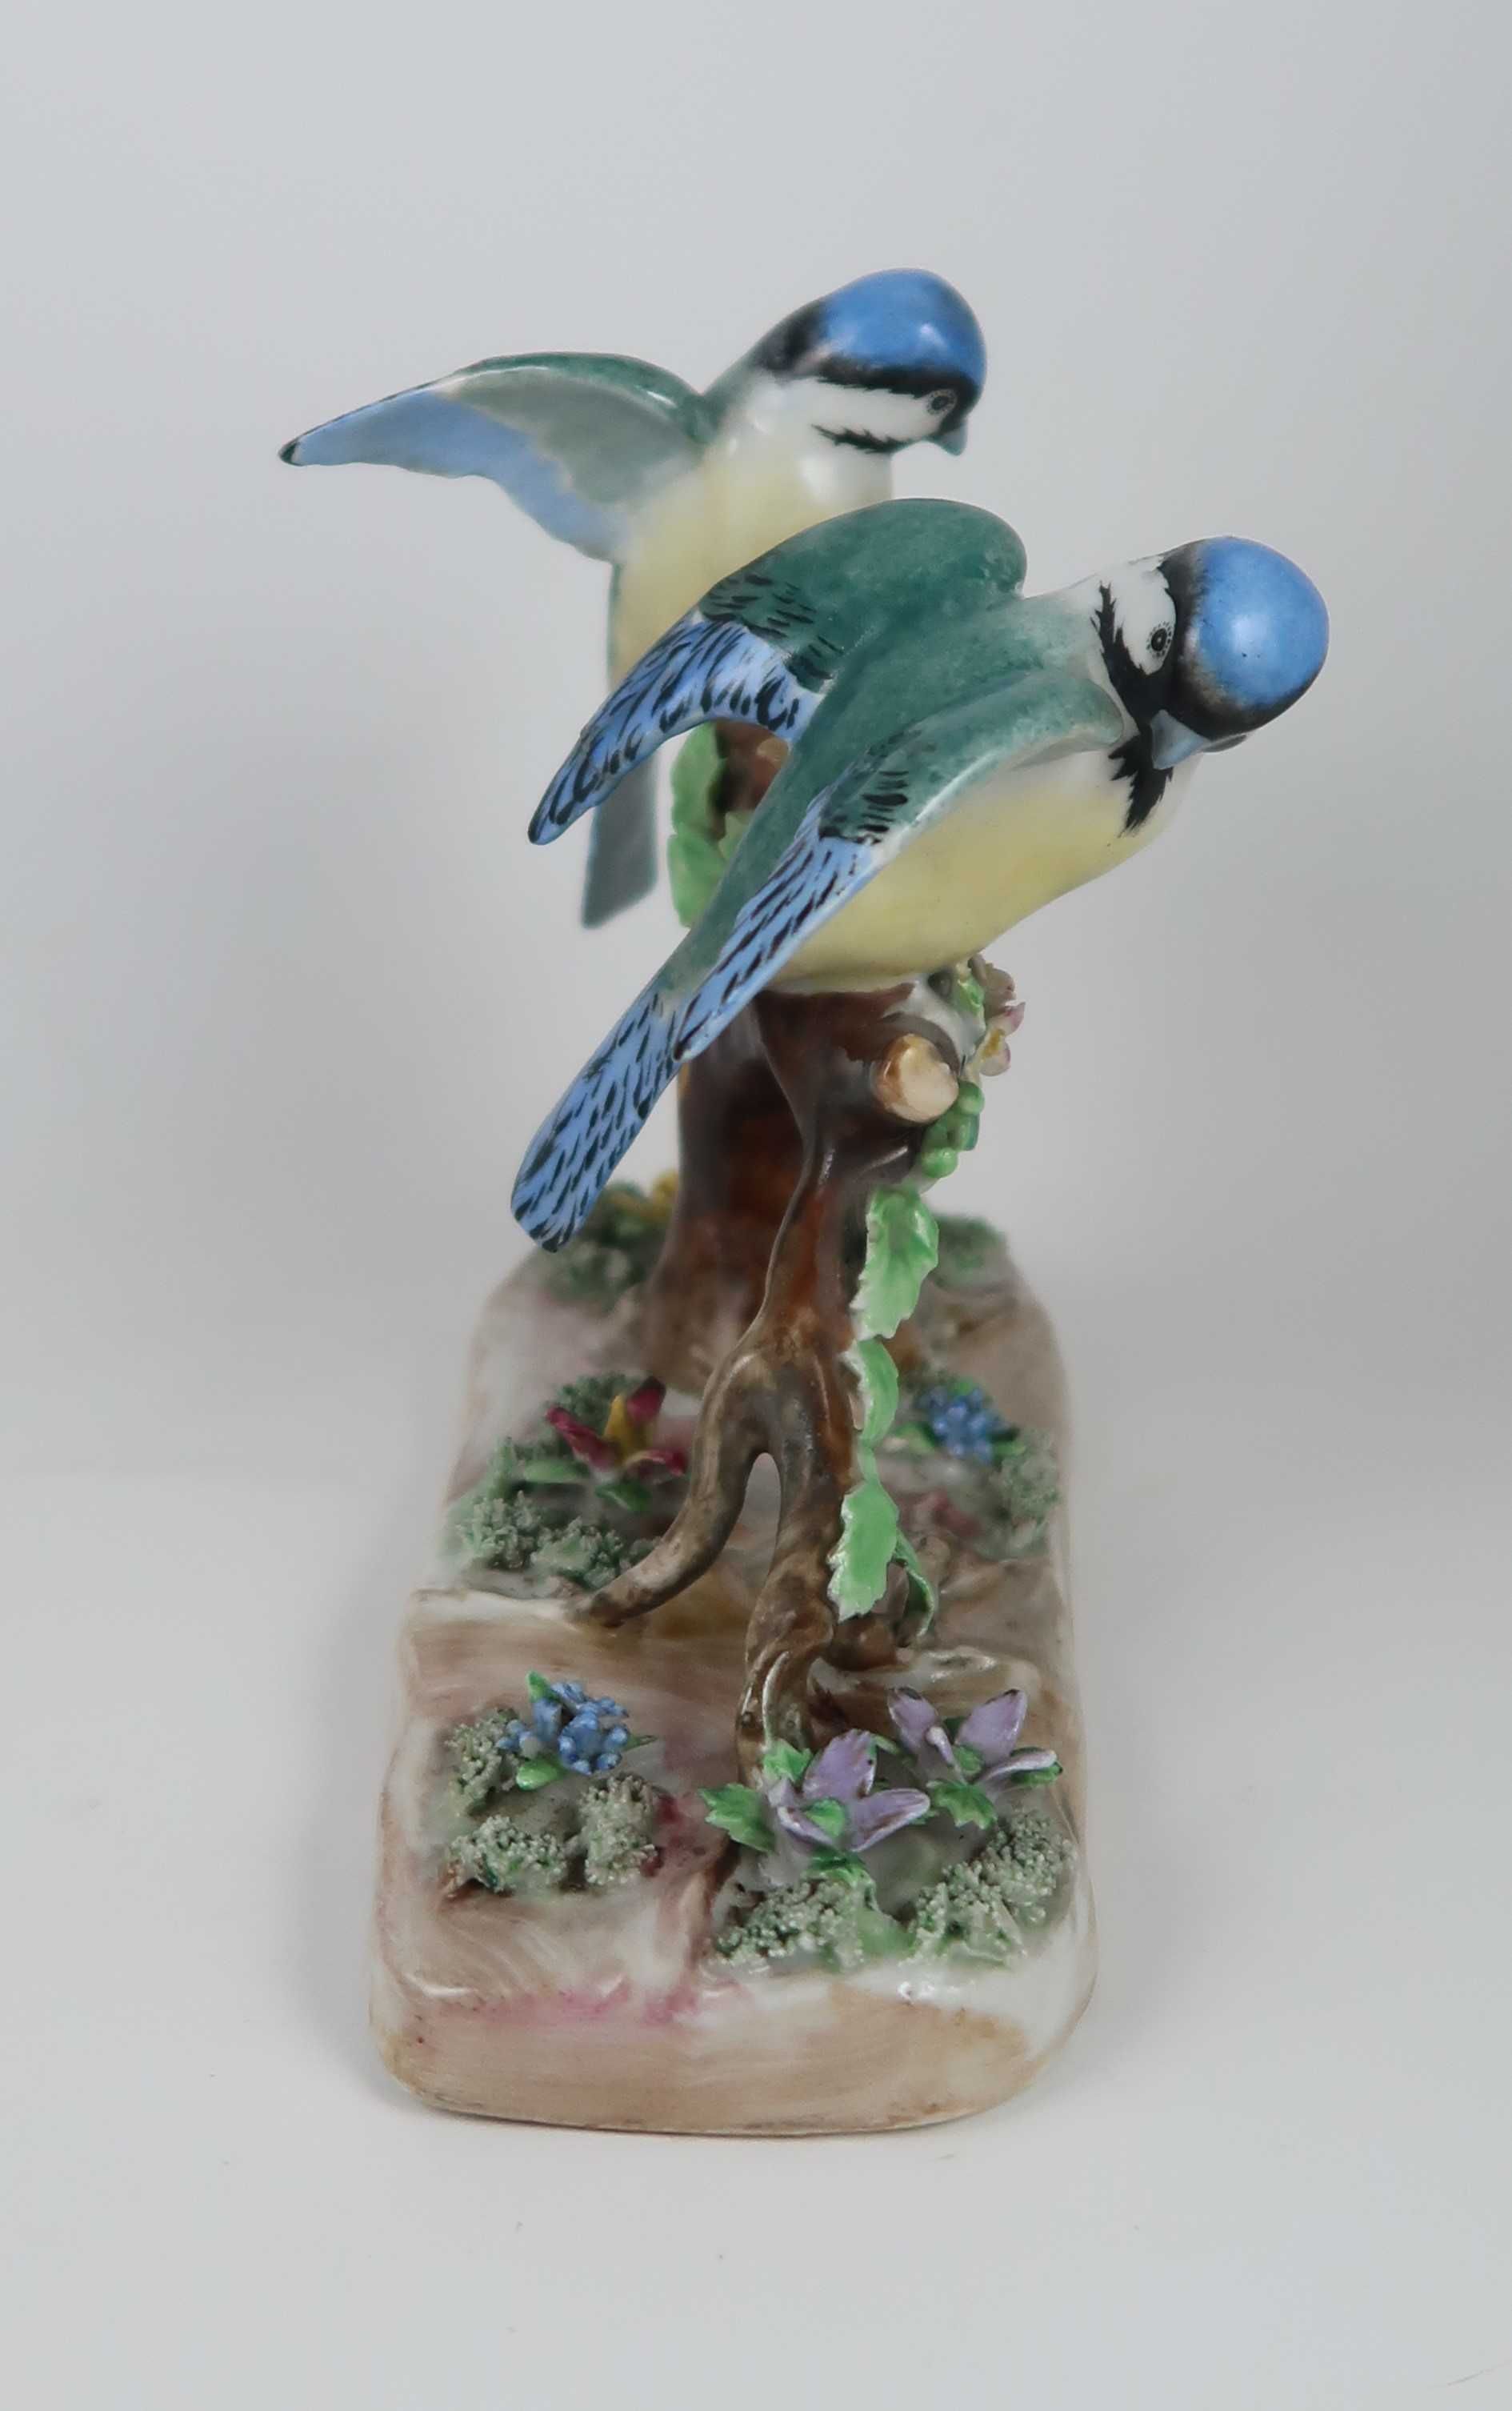 Grupo escultórico Pássaros em Ramo - Porcelana Artibus